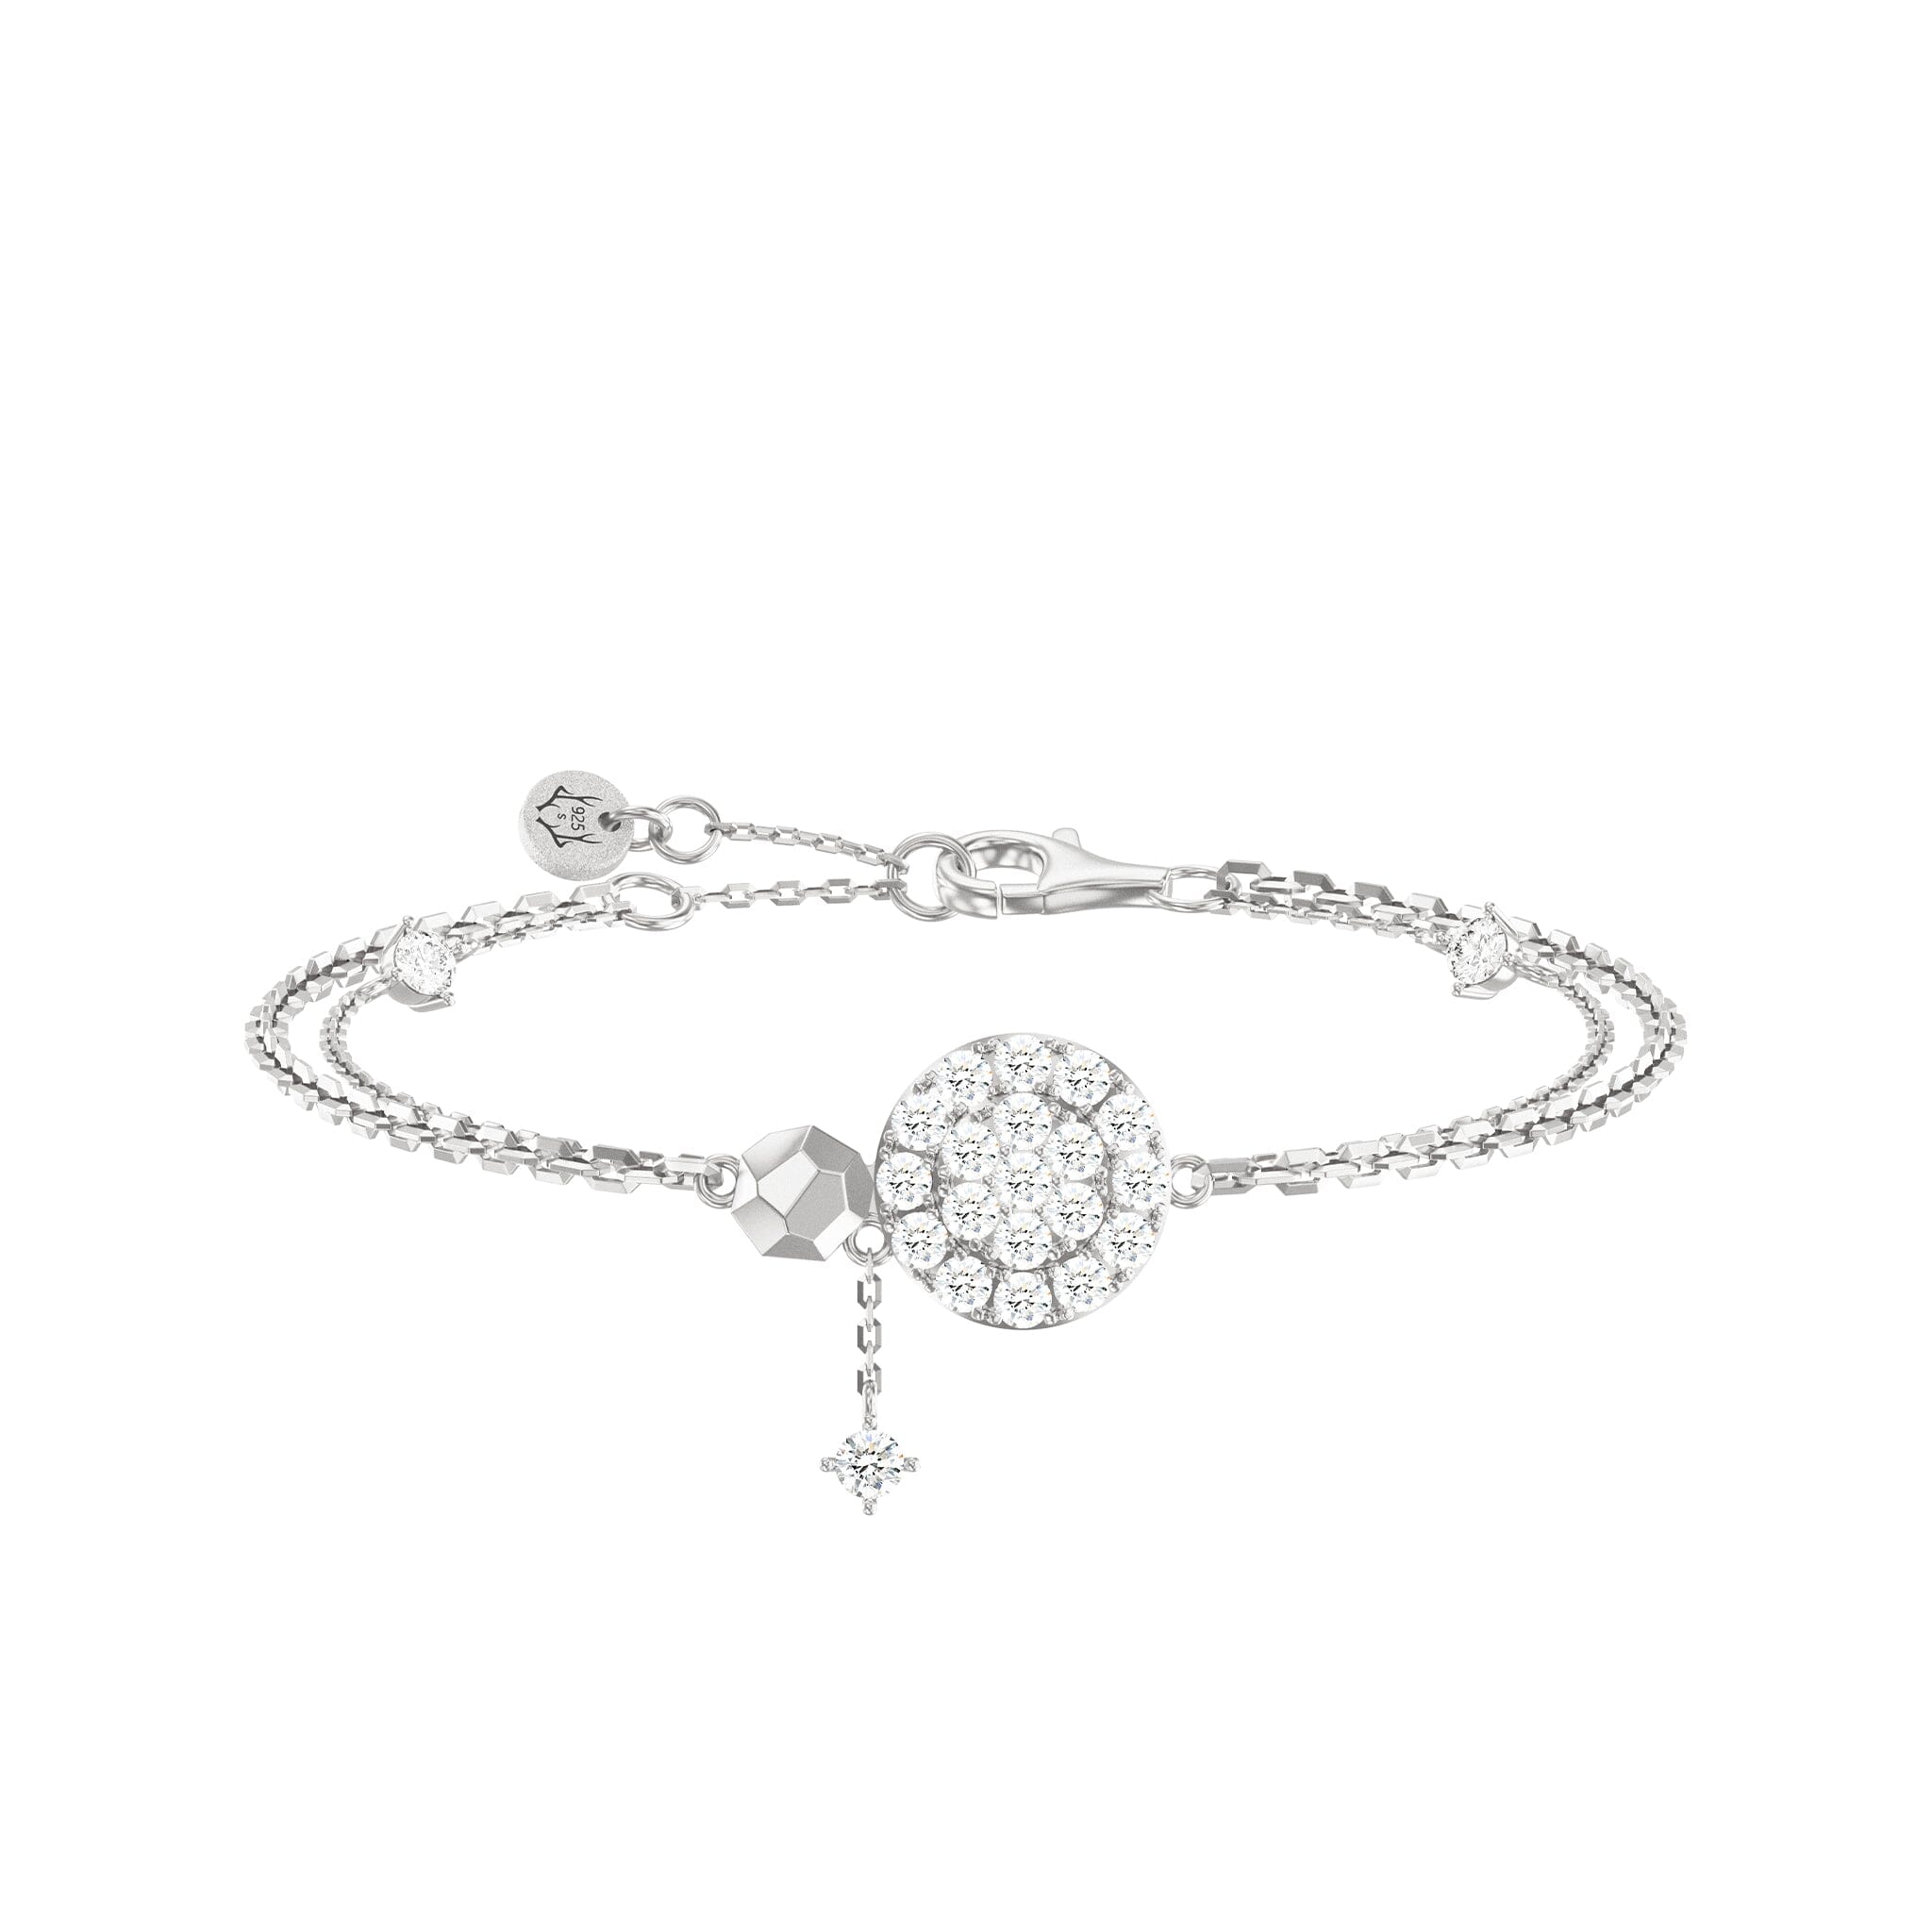 Women's Sterling Silver Bracelet of Starry Sky Charm Bracelets WAA FASHION GROUP 